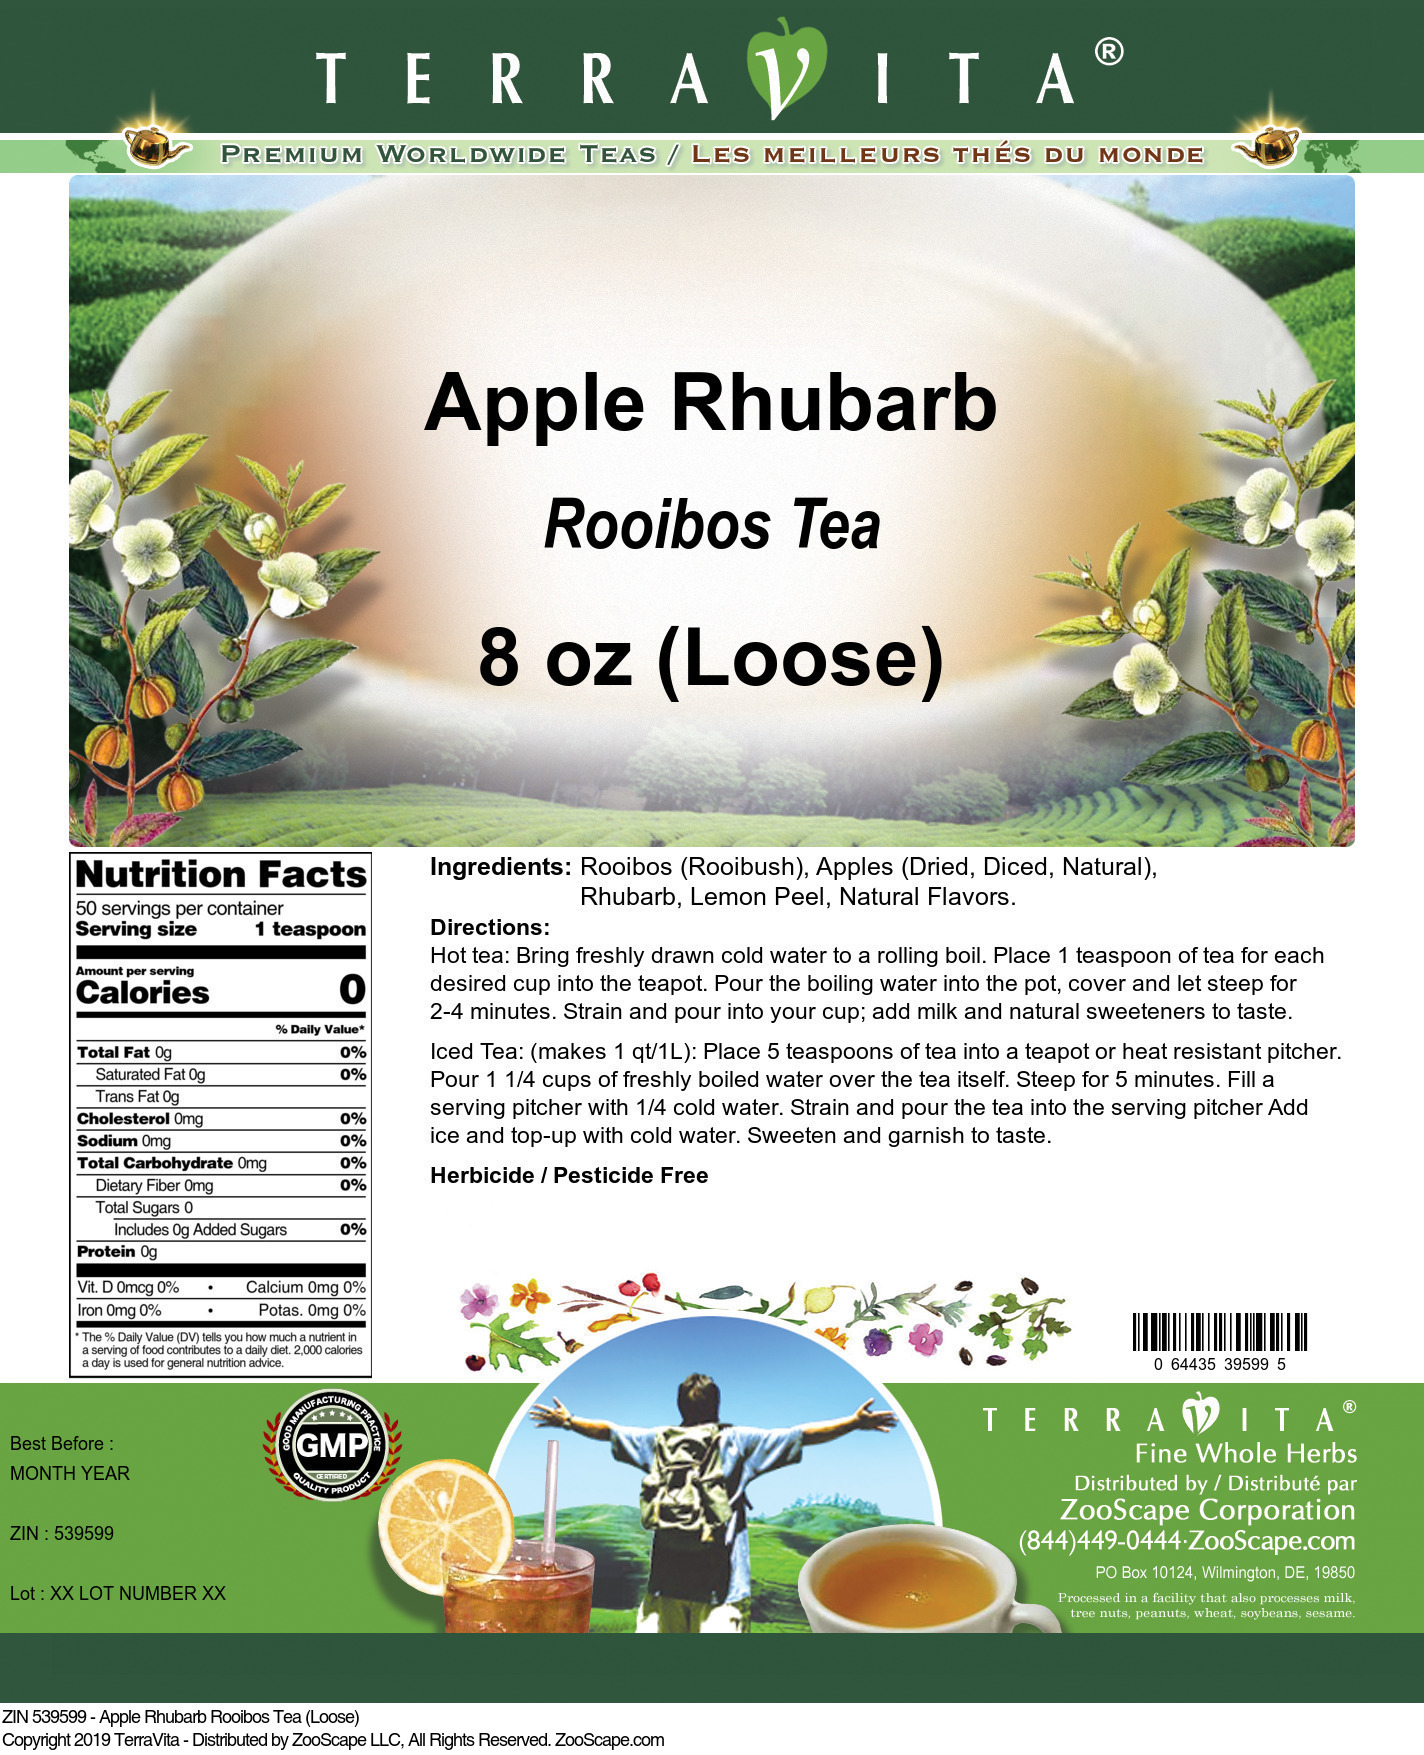 Apple Rhubarb Rooibos Tea (Loose) - Label